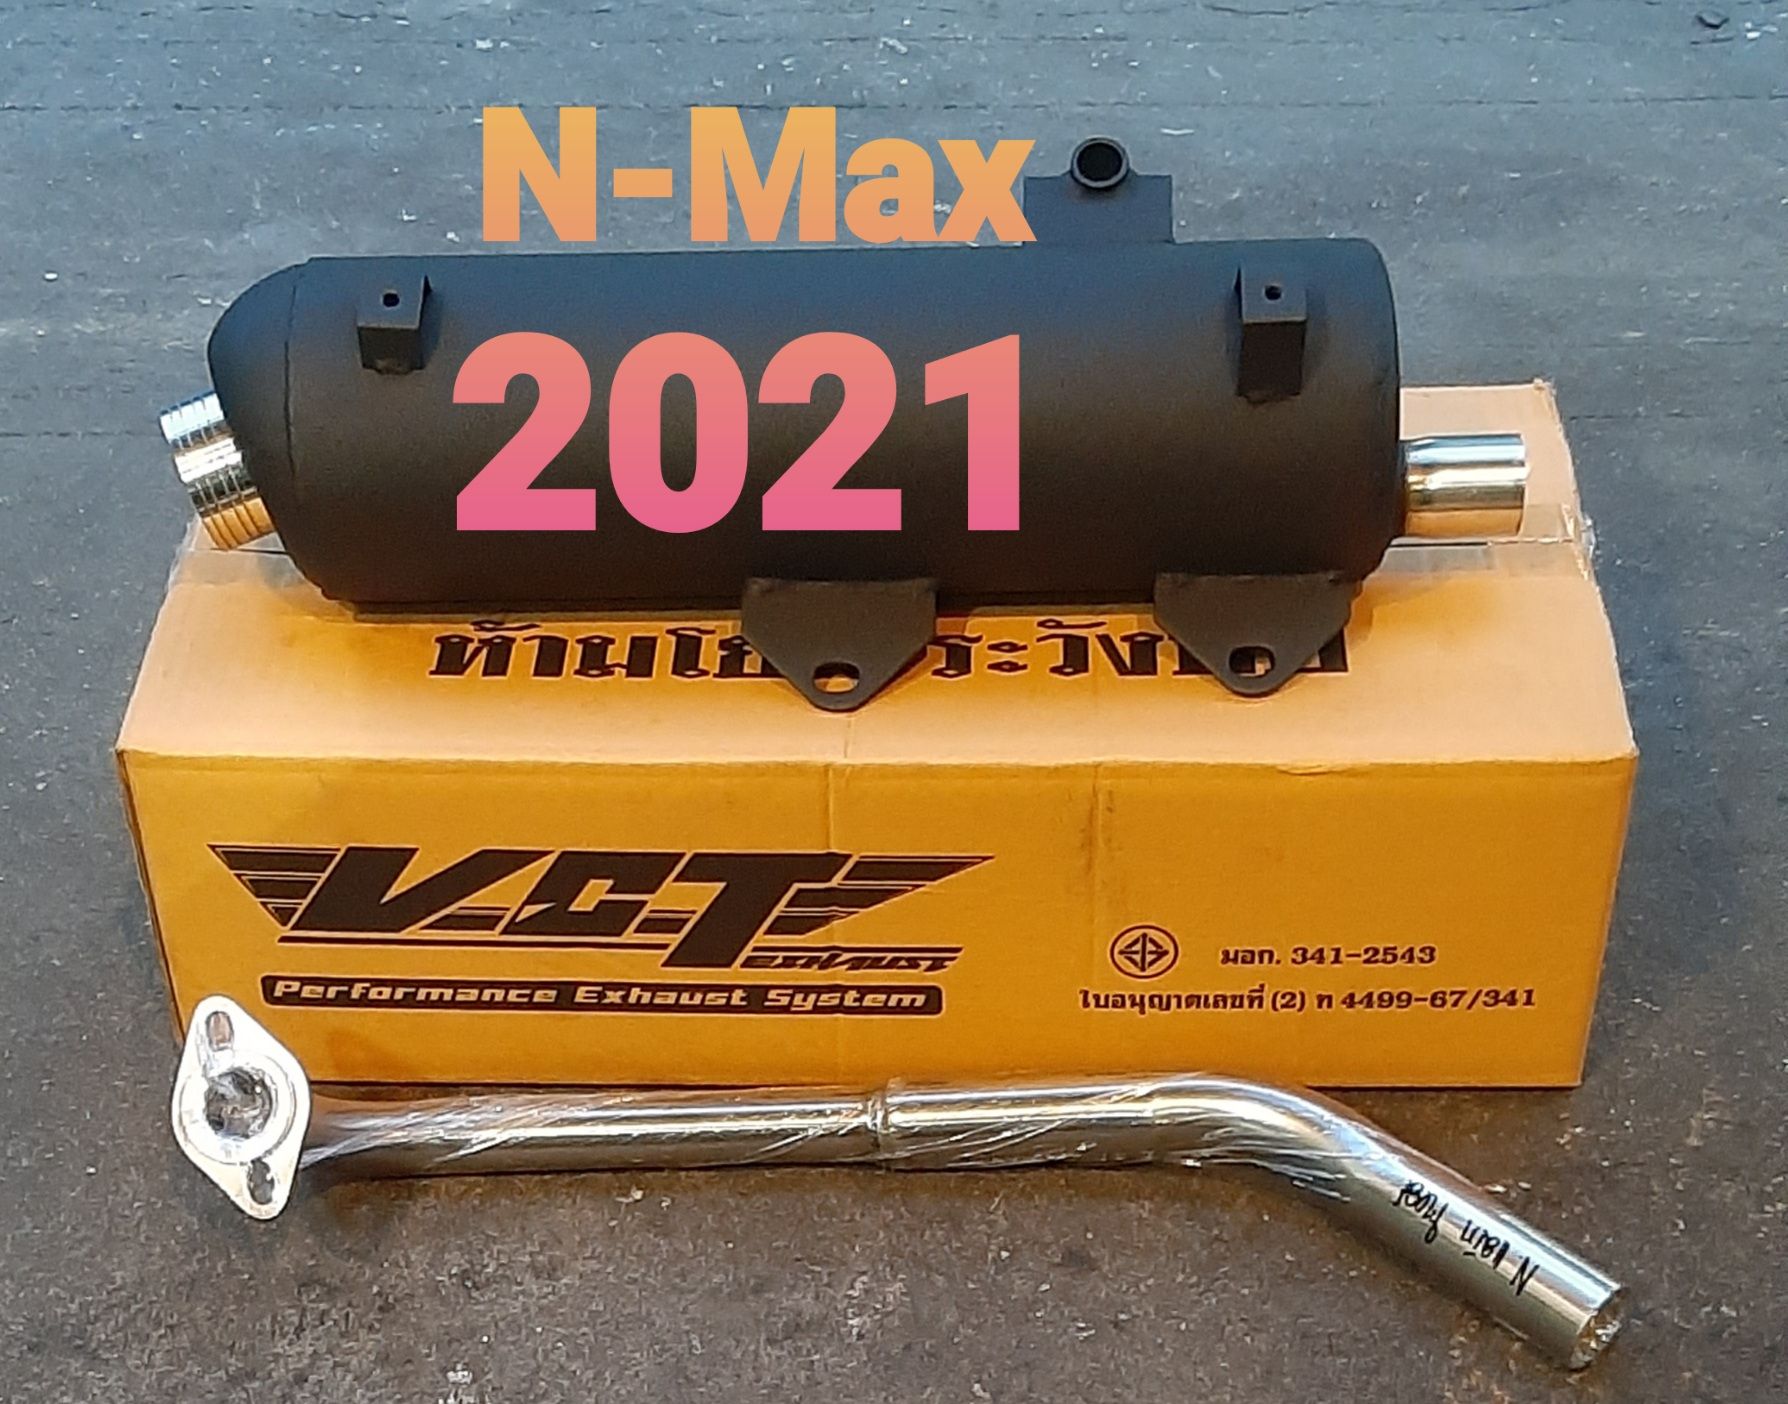 ท่อเดิมผ่าหมก N-Max New  2021 +คอท่อสแตนเลสแท้  ครอยปลายท่อสแตนเลส